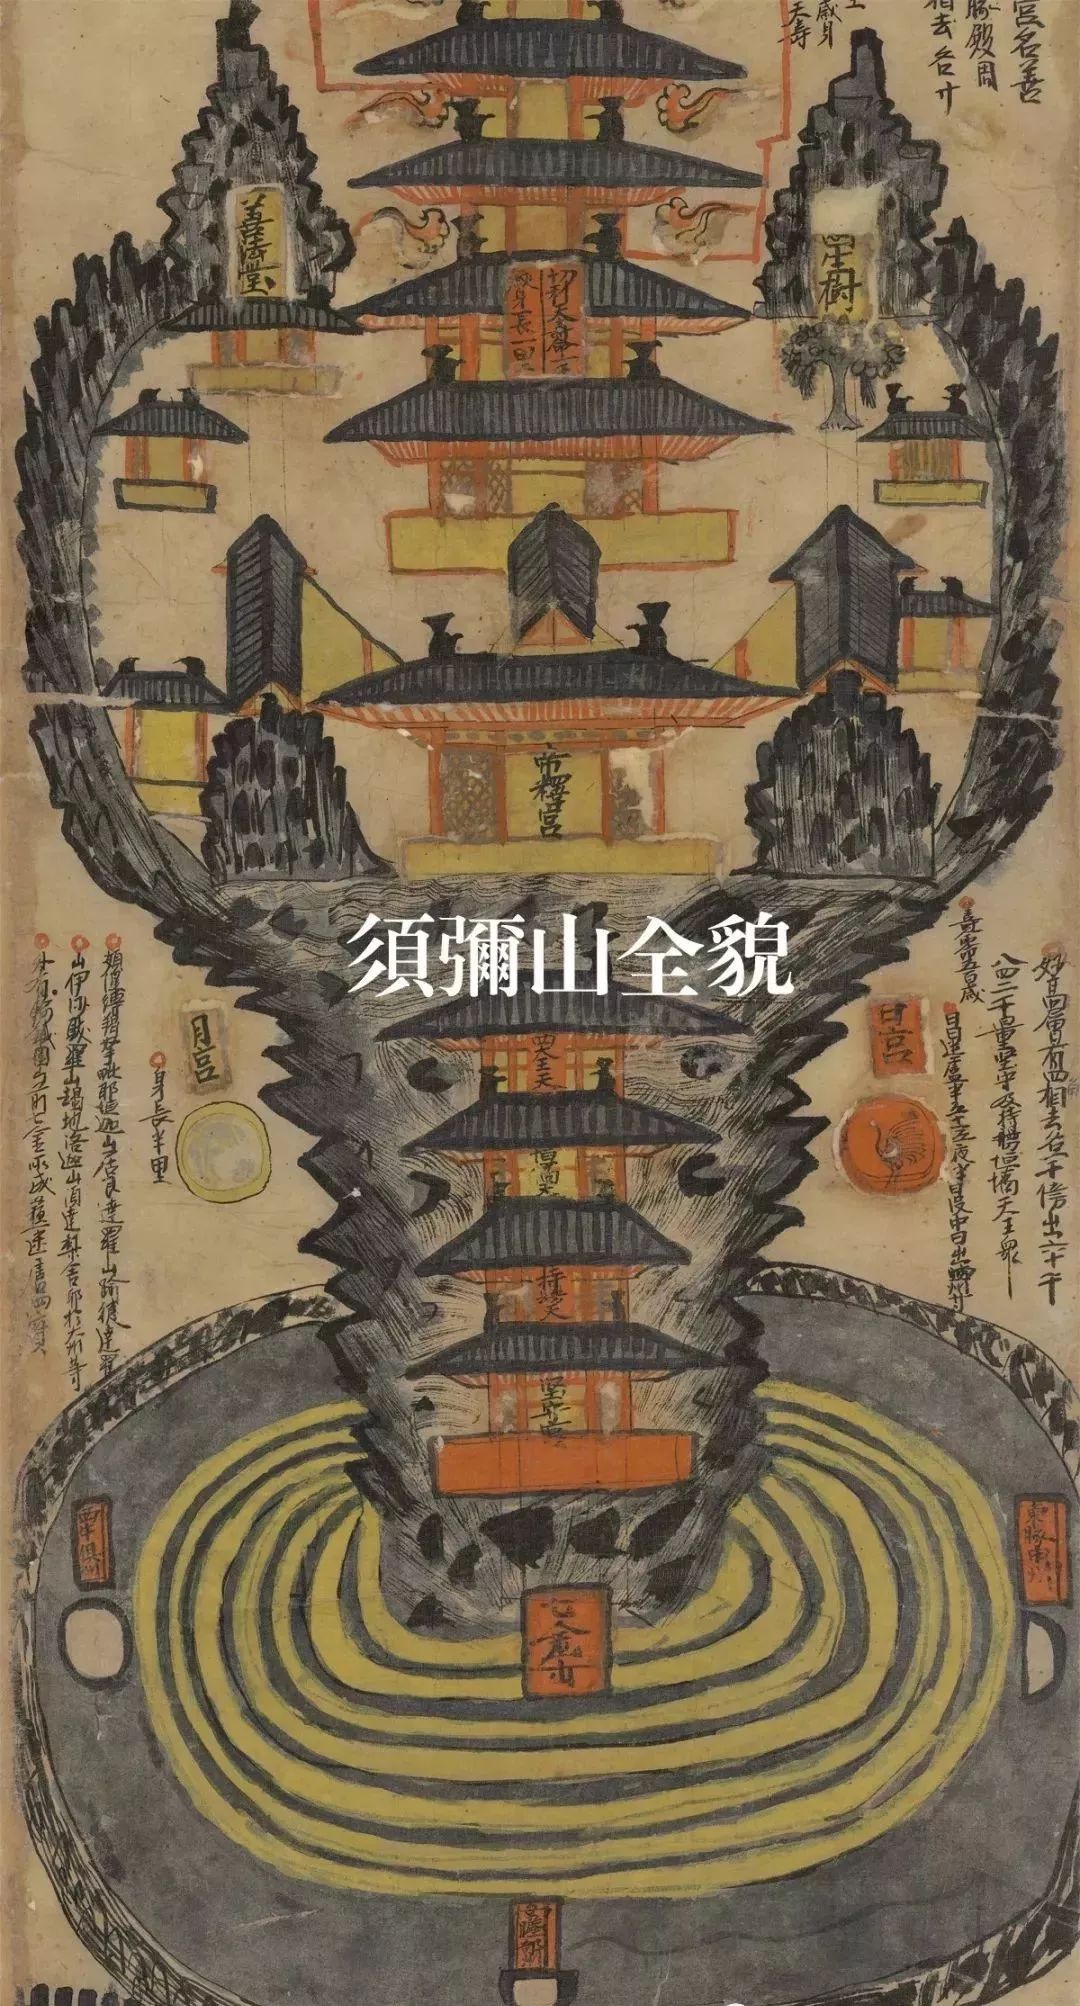 三界九地之图:世界上最早最完整的佛教三千大千世界图